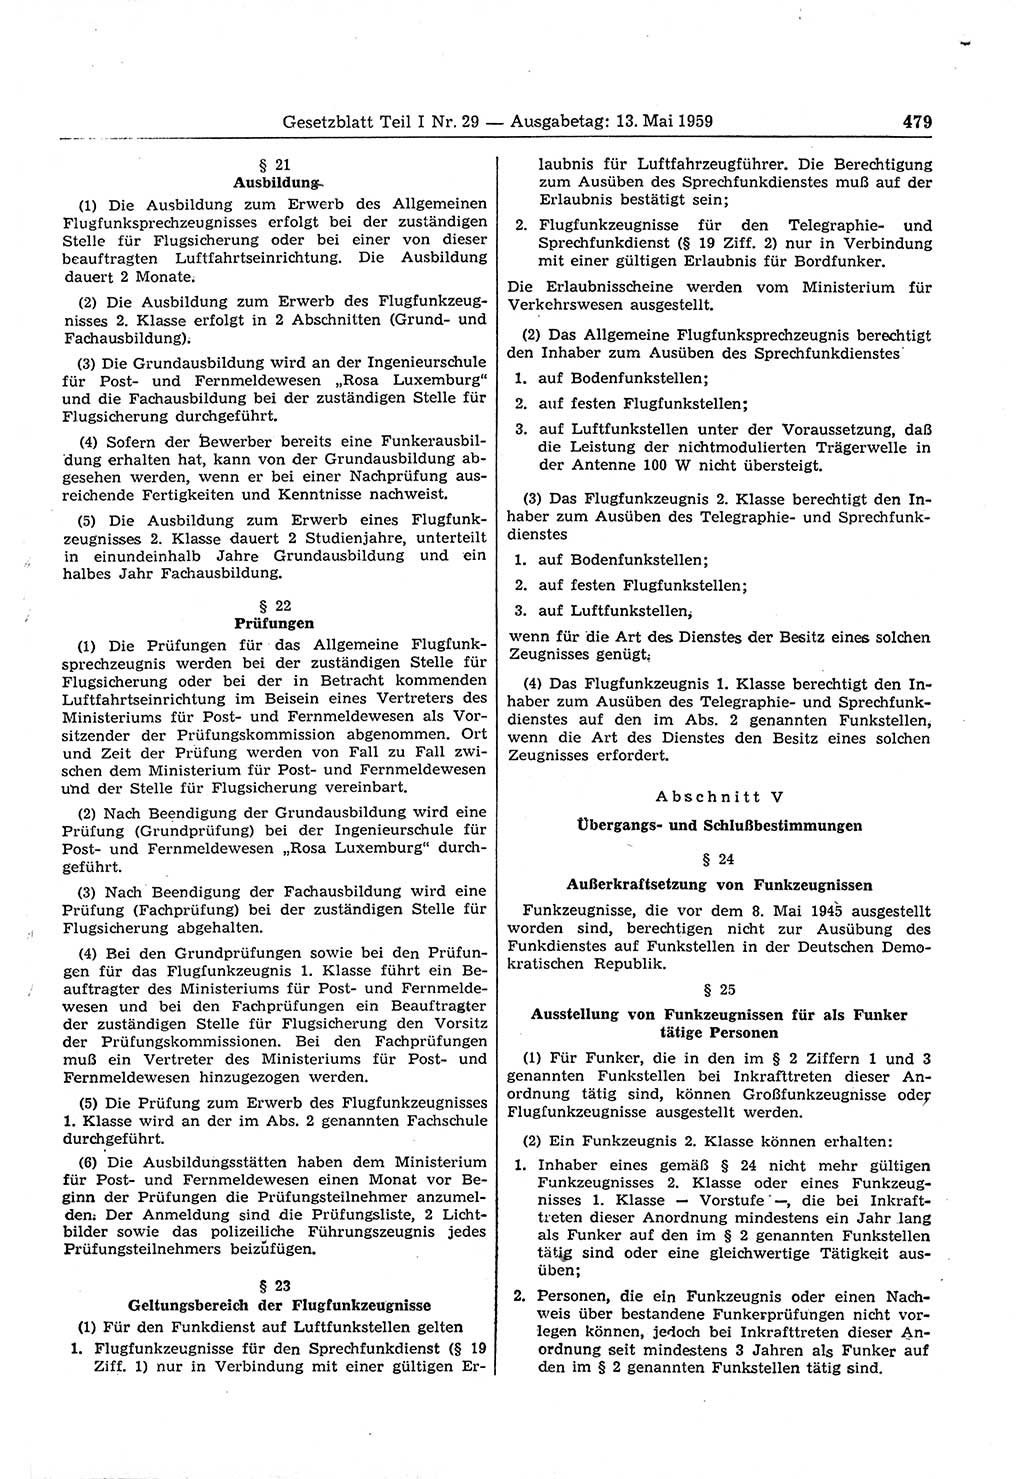 Gesetzblatt (GBl.) der Deutschen Demokratischen Republik (DDR) Teil Ⅰ 1959, Seite 479 (GBl. DDR Ⅰ 1959, S. 479)